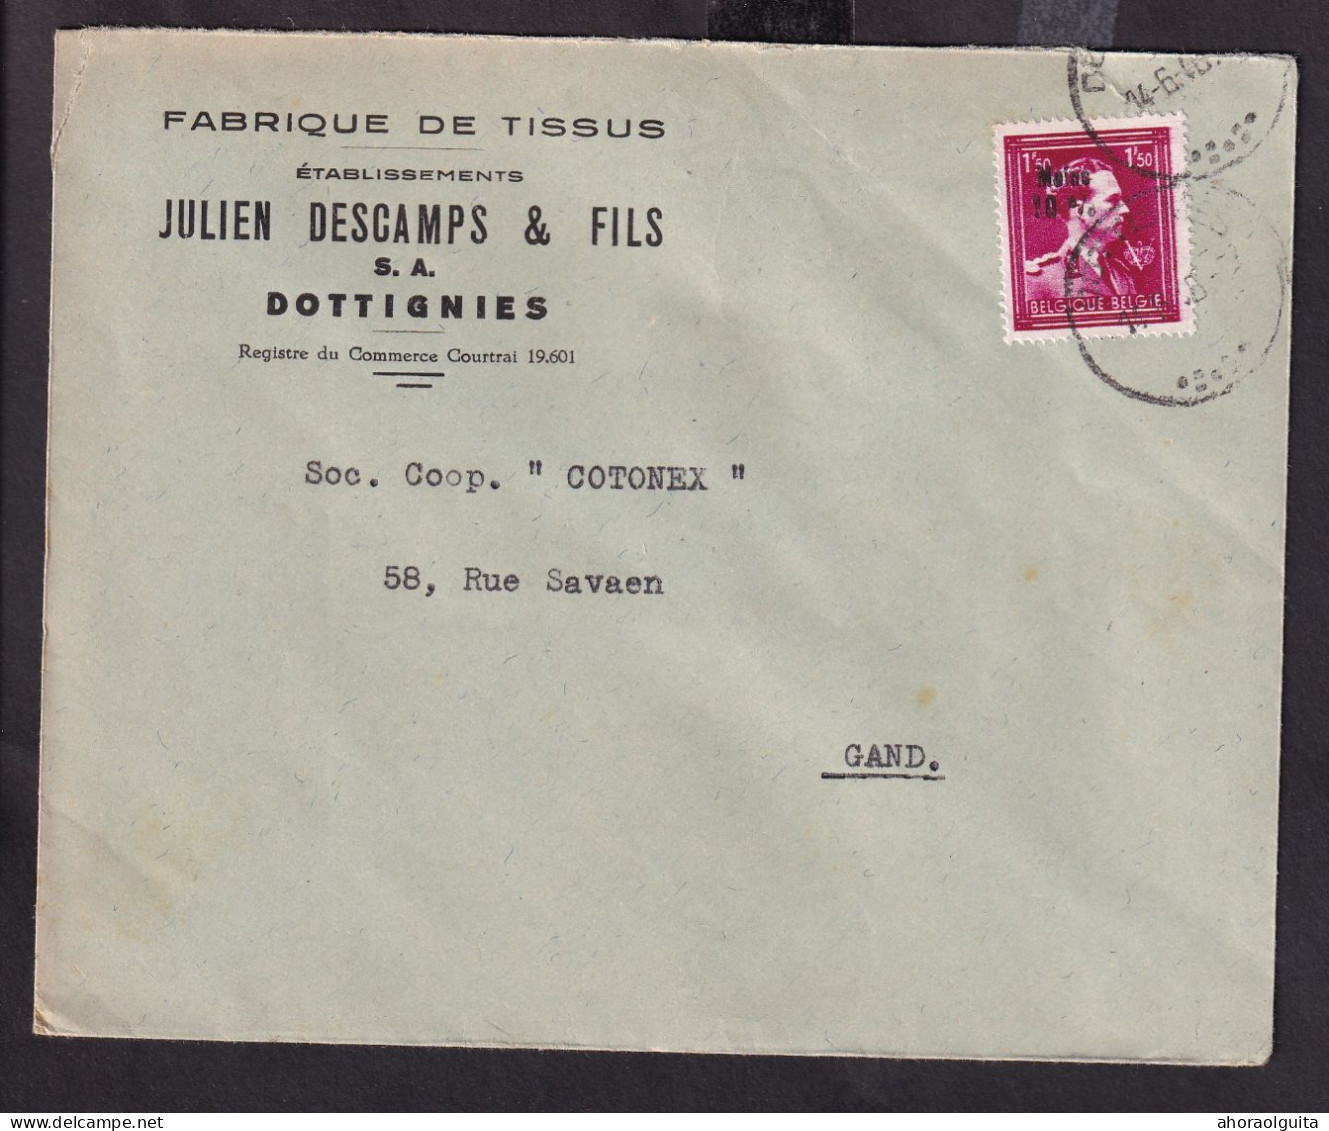 DDFF 288 -- Enveloppe TP Surcharge Locale En Texte Moins 10 % DOTTIGNIES 1946 - Entete Tissus Julien Descamps - 1946 -10%